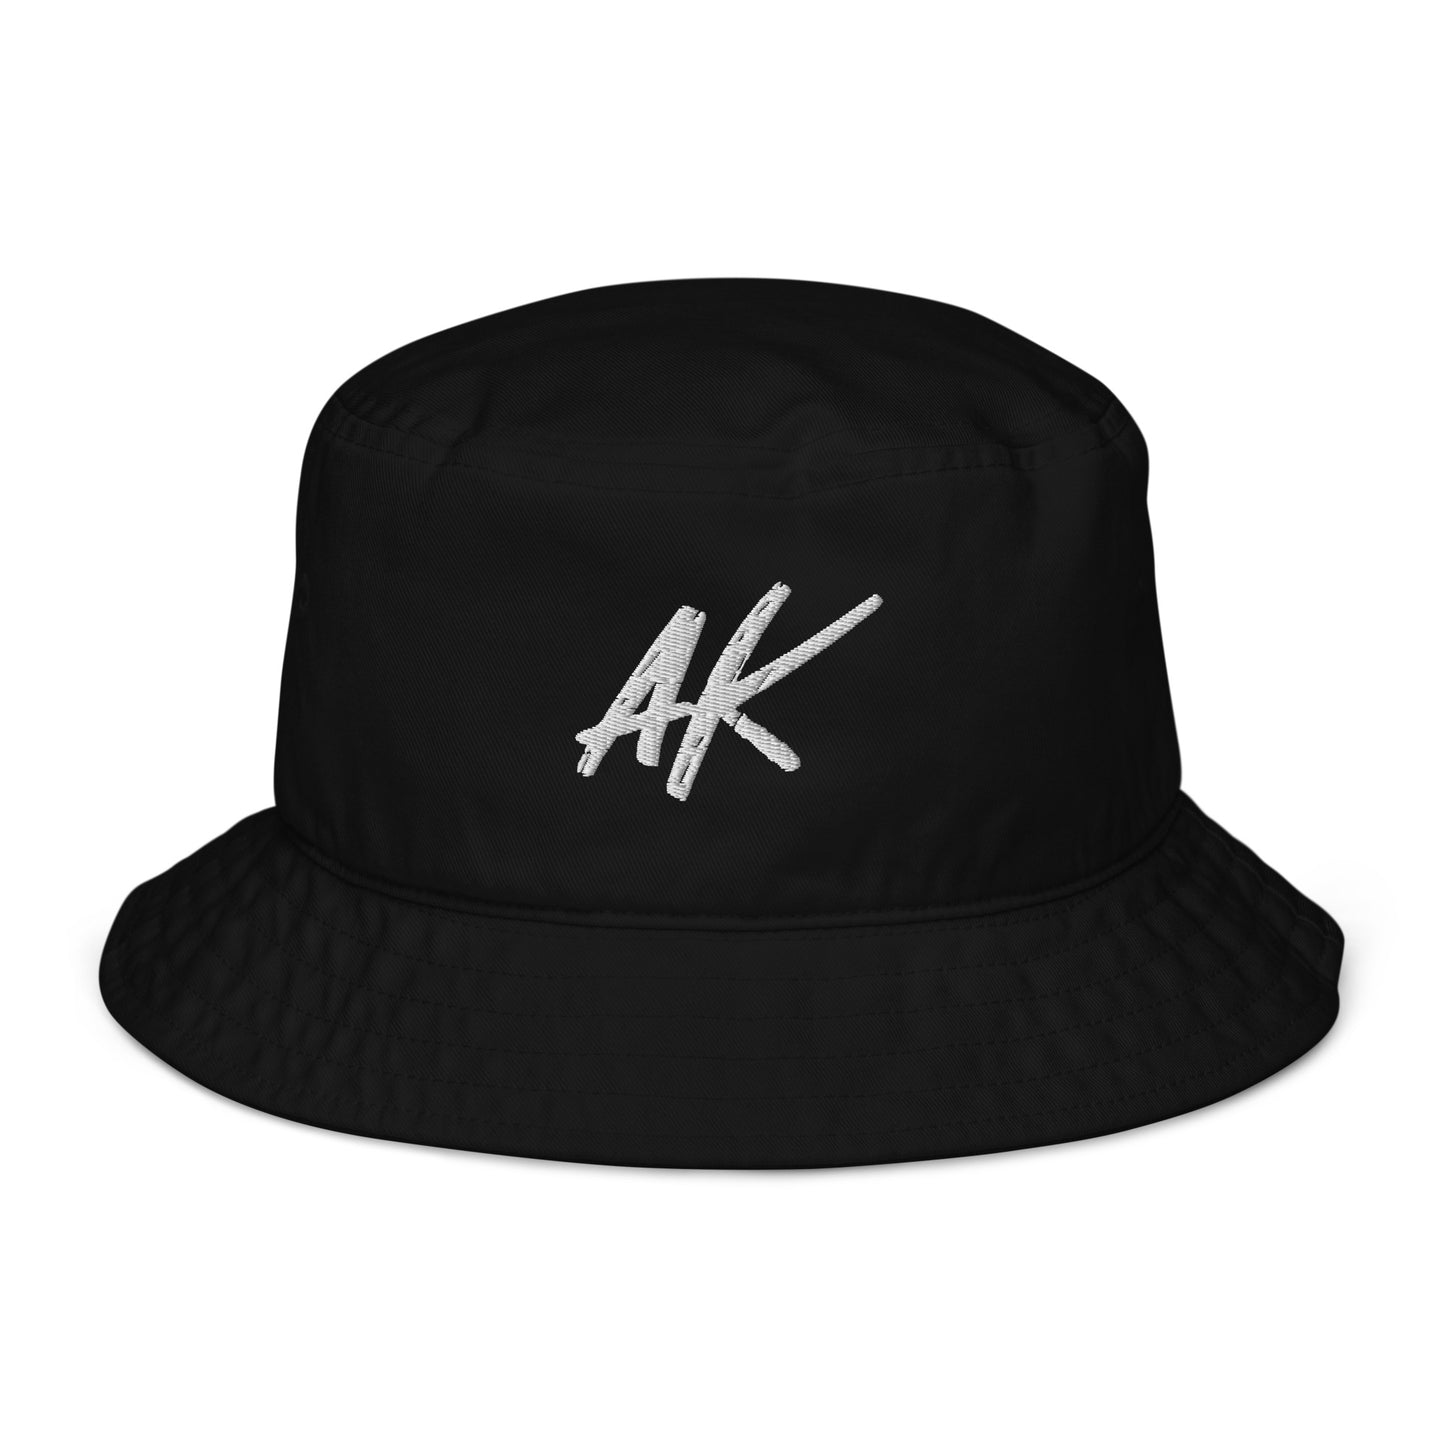 AK bucket hat (white)